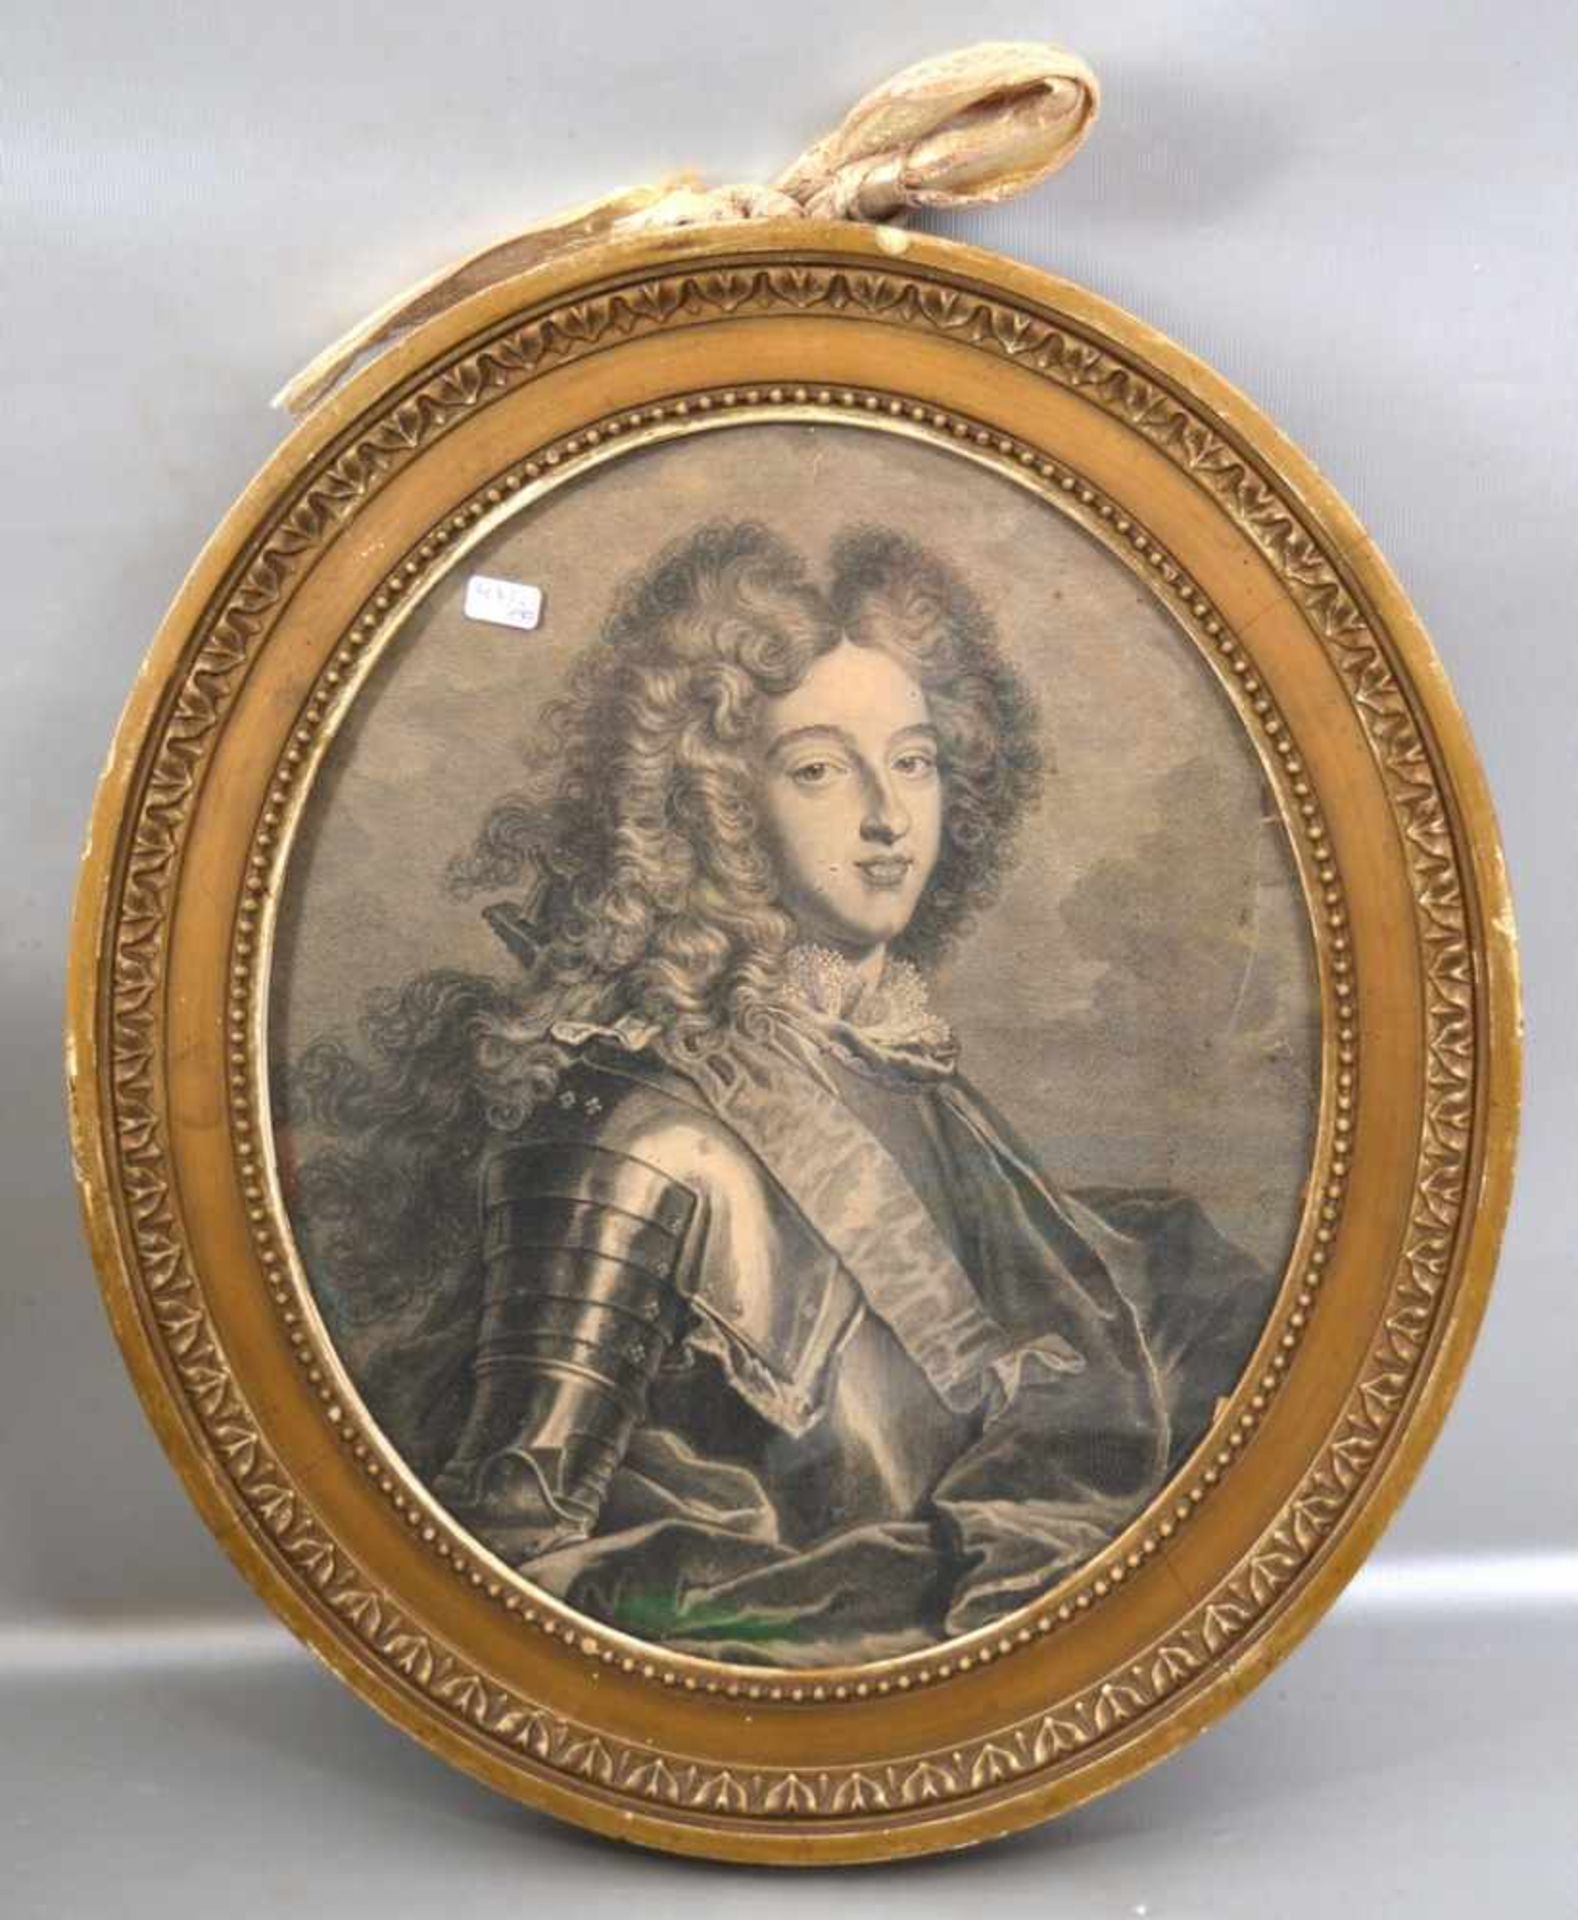 Kupferstich Portrait eines Kurfürsten, oval, 26 X 31 cm, Goldrahmen, 18. Jh.